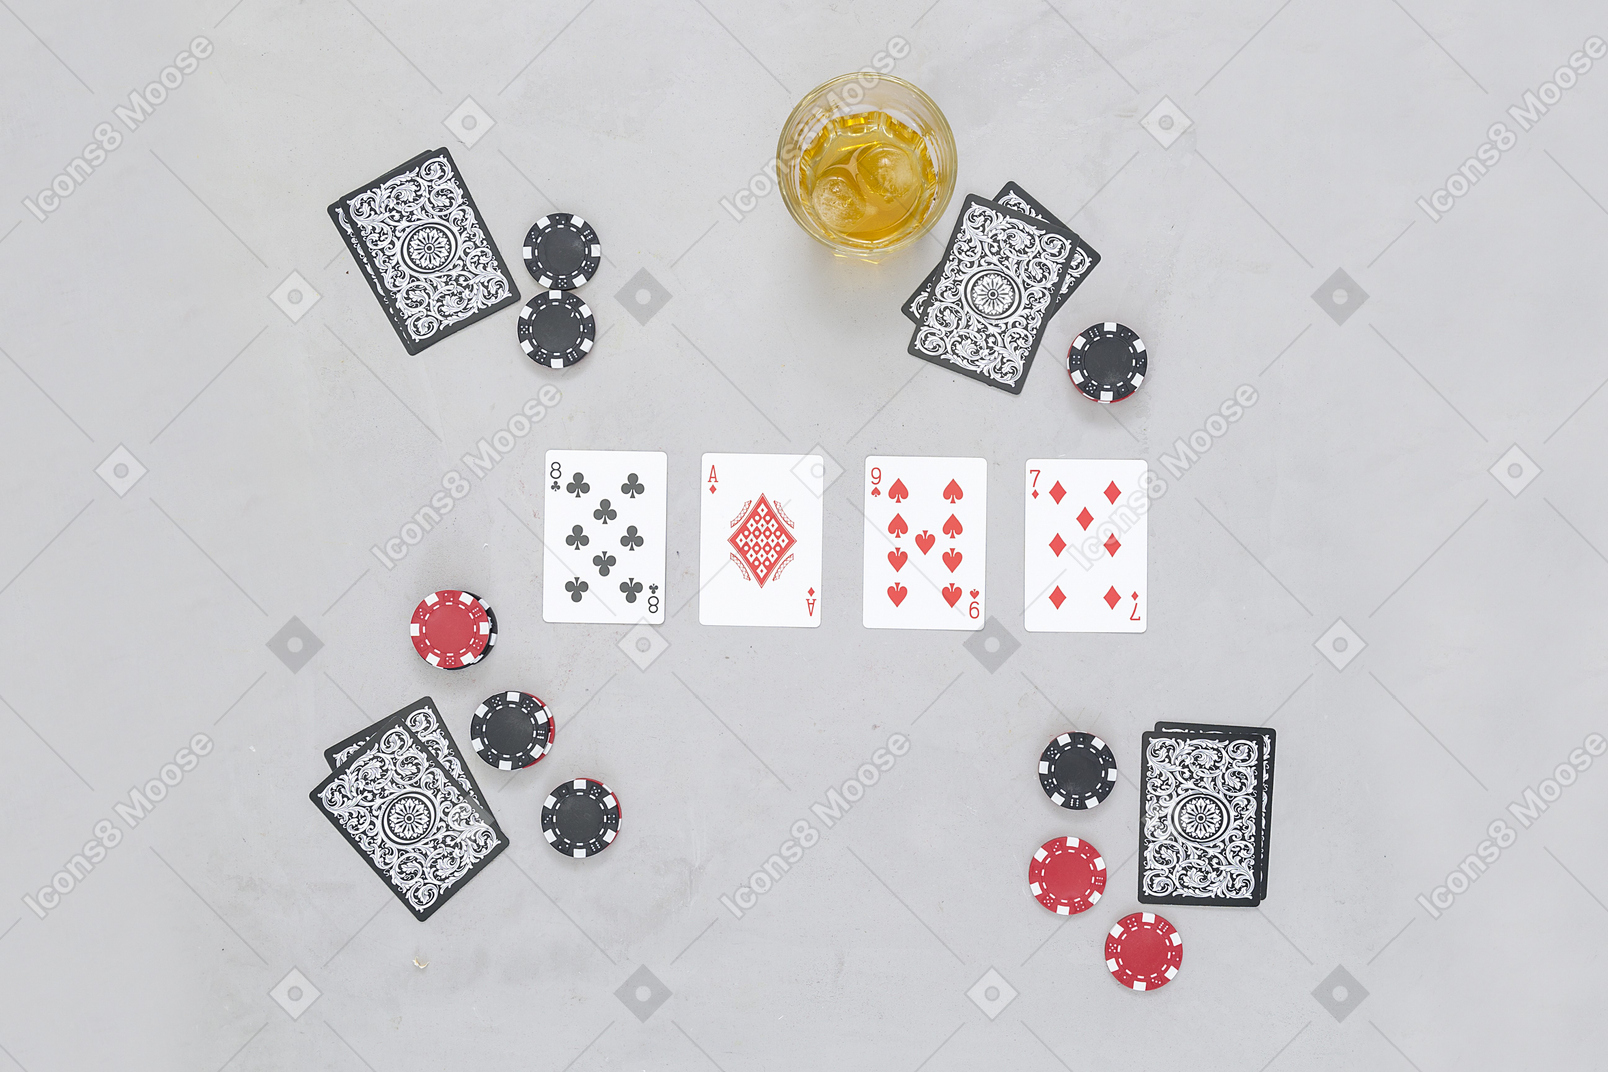 玩纸牌游戏很有意思